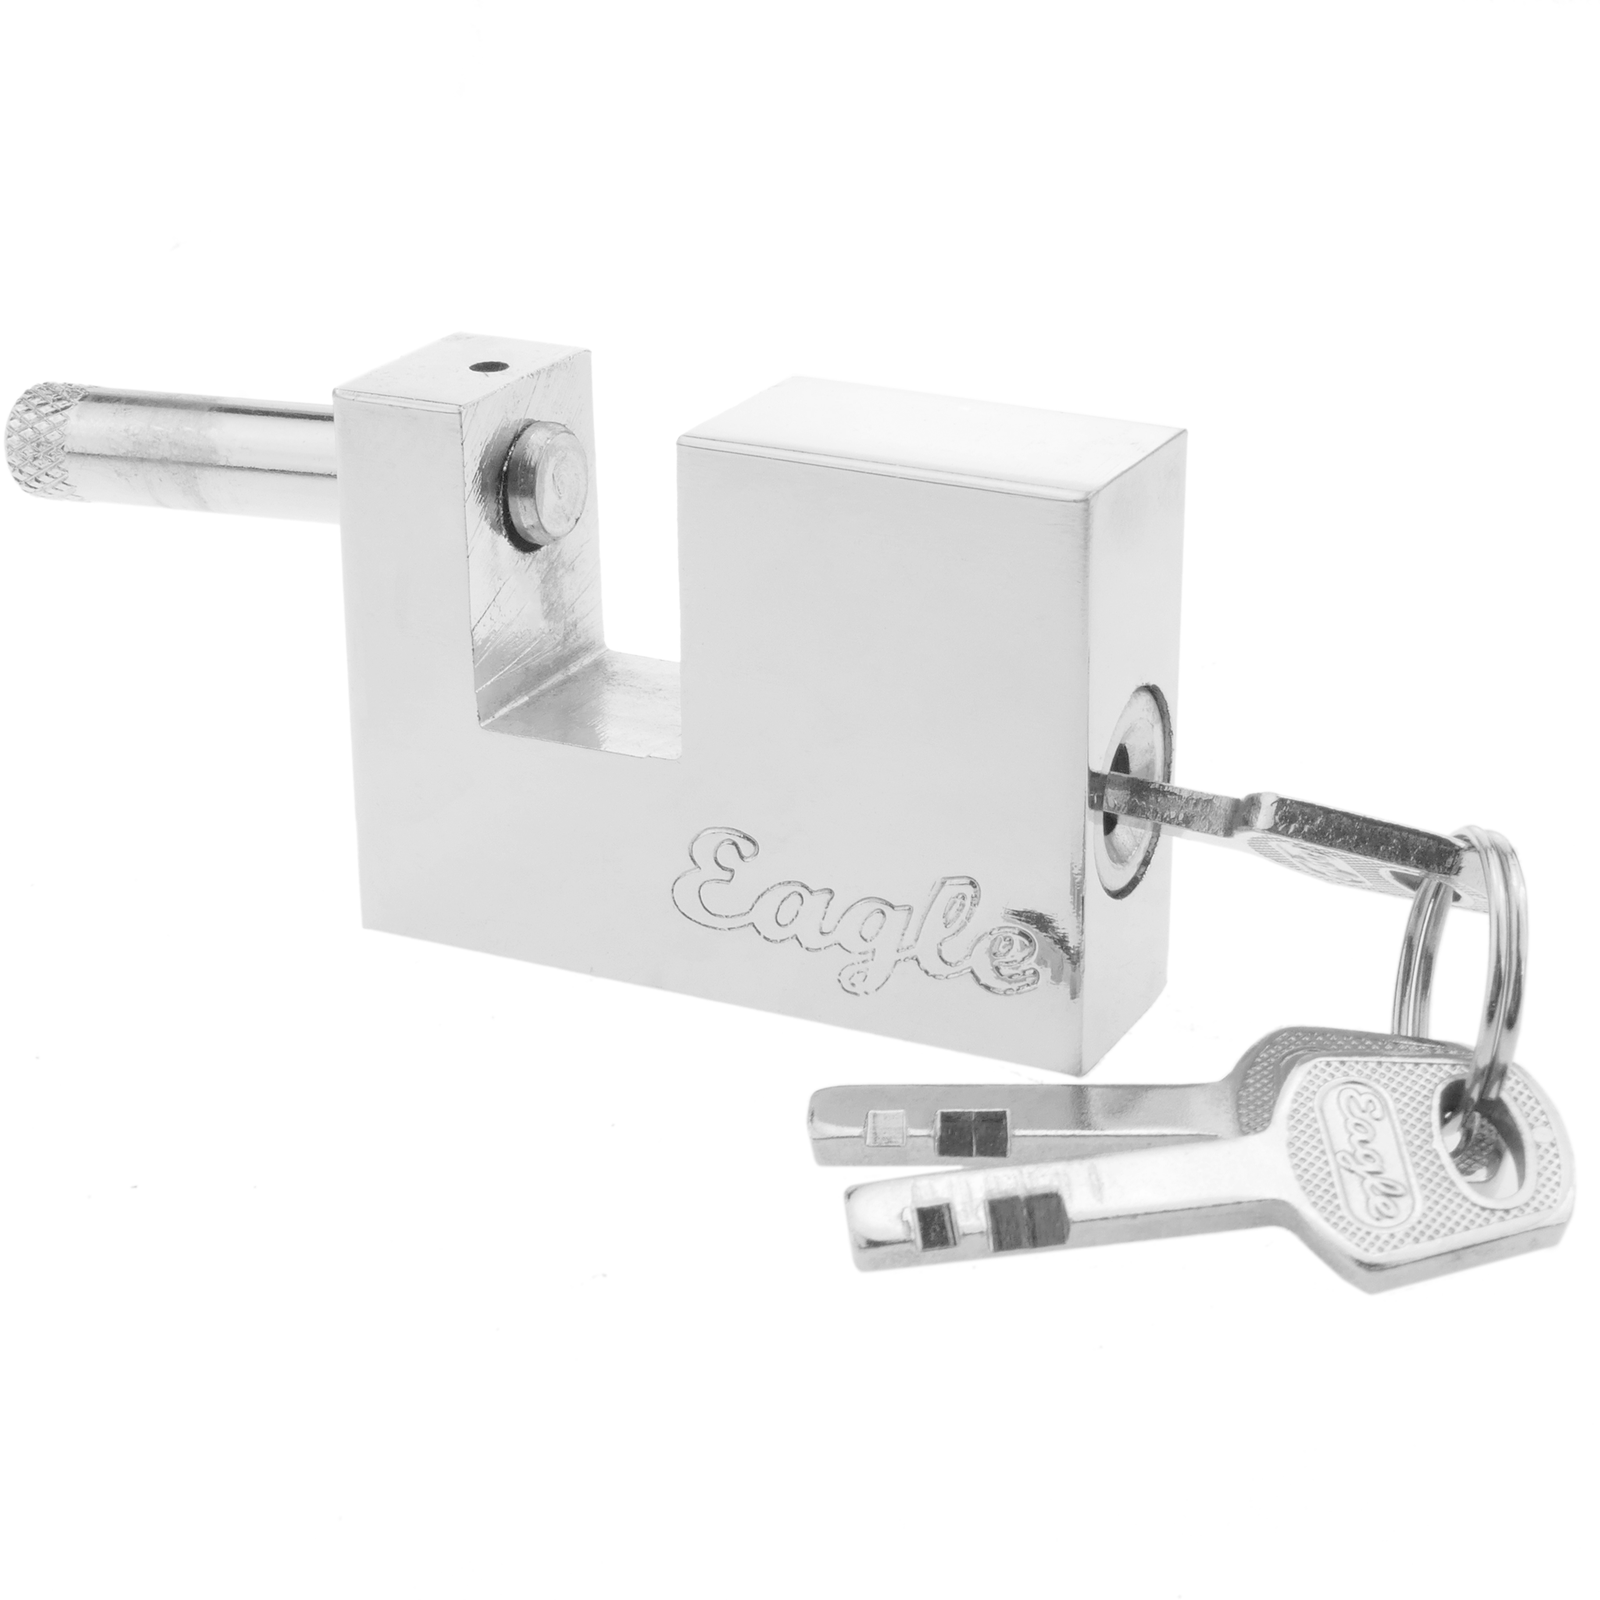 Security padlock iron 70mm